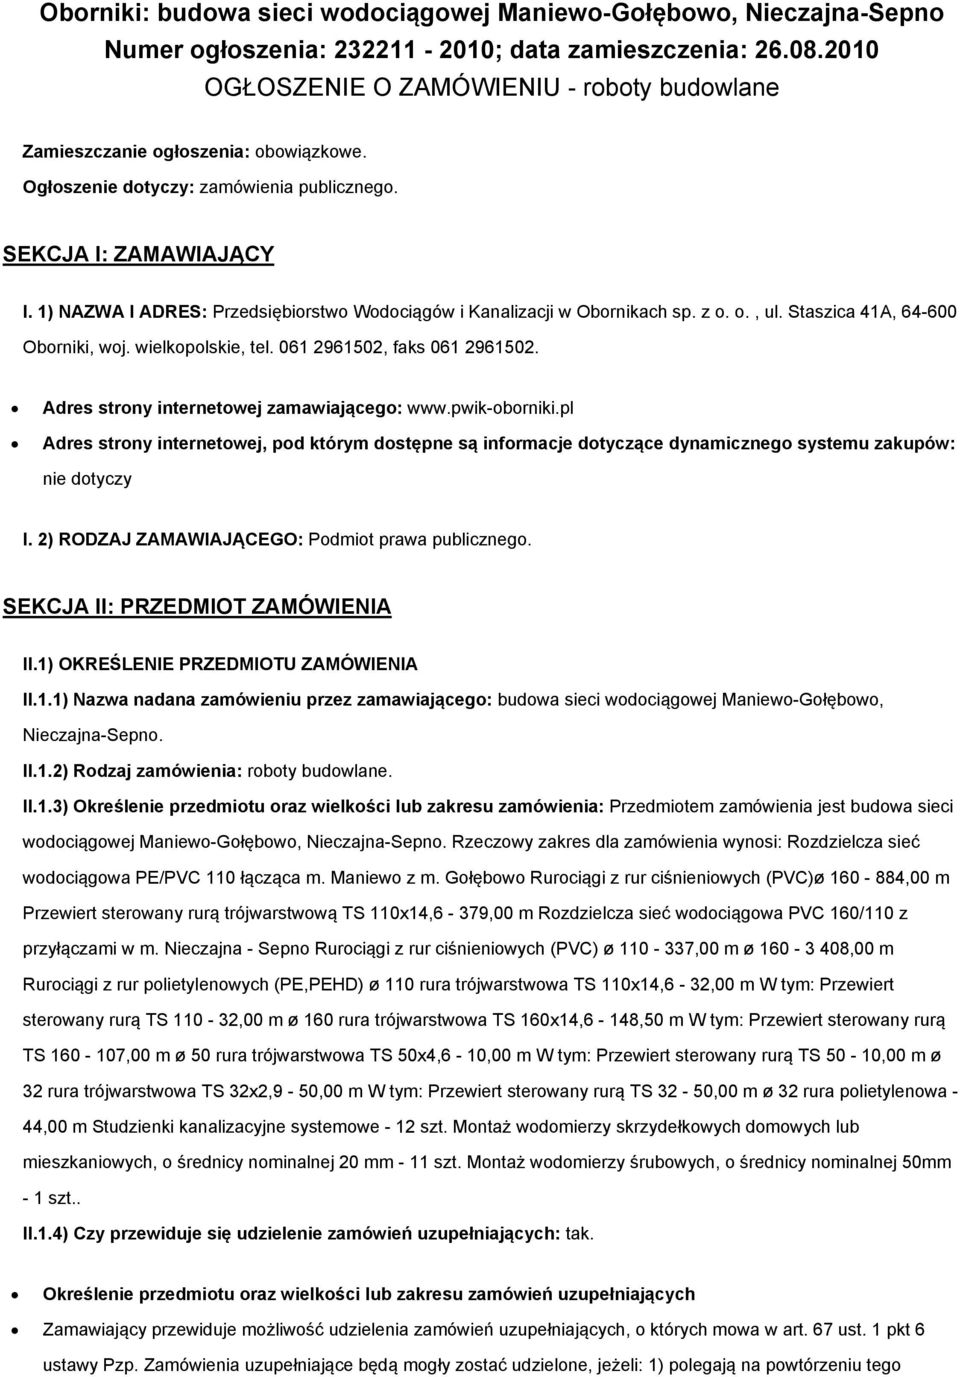 1) NAZWA I ADRES: Przedsiębiorstwo Wodociągów i Kanalizacji w Obornikach sp. z o. o., ul. Staszica 41A, 64-600 Oborniki, woj. wielkopolskie, tel. 061 2961502, faks 061 2961502.